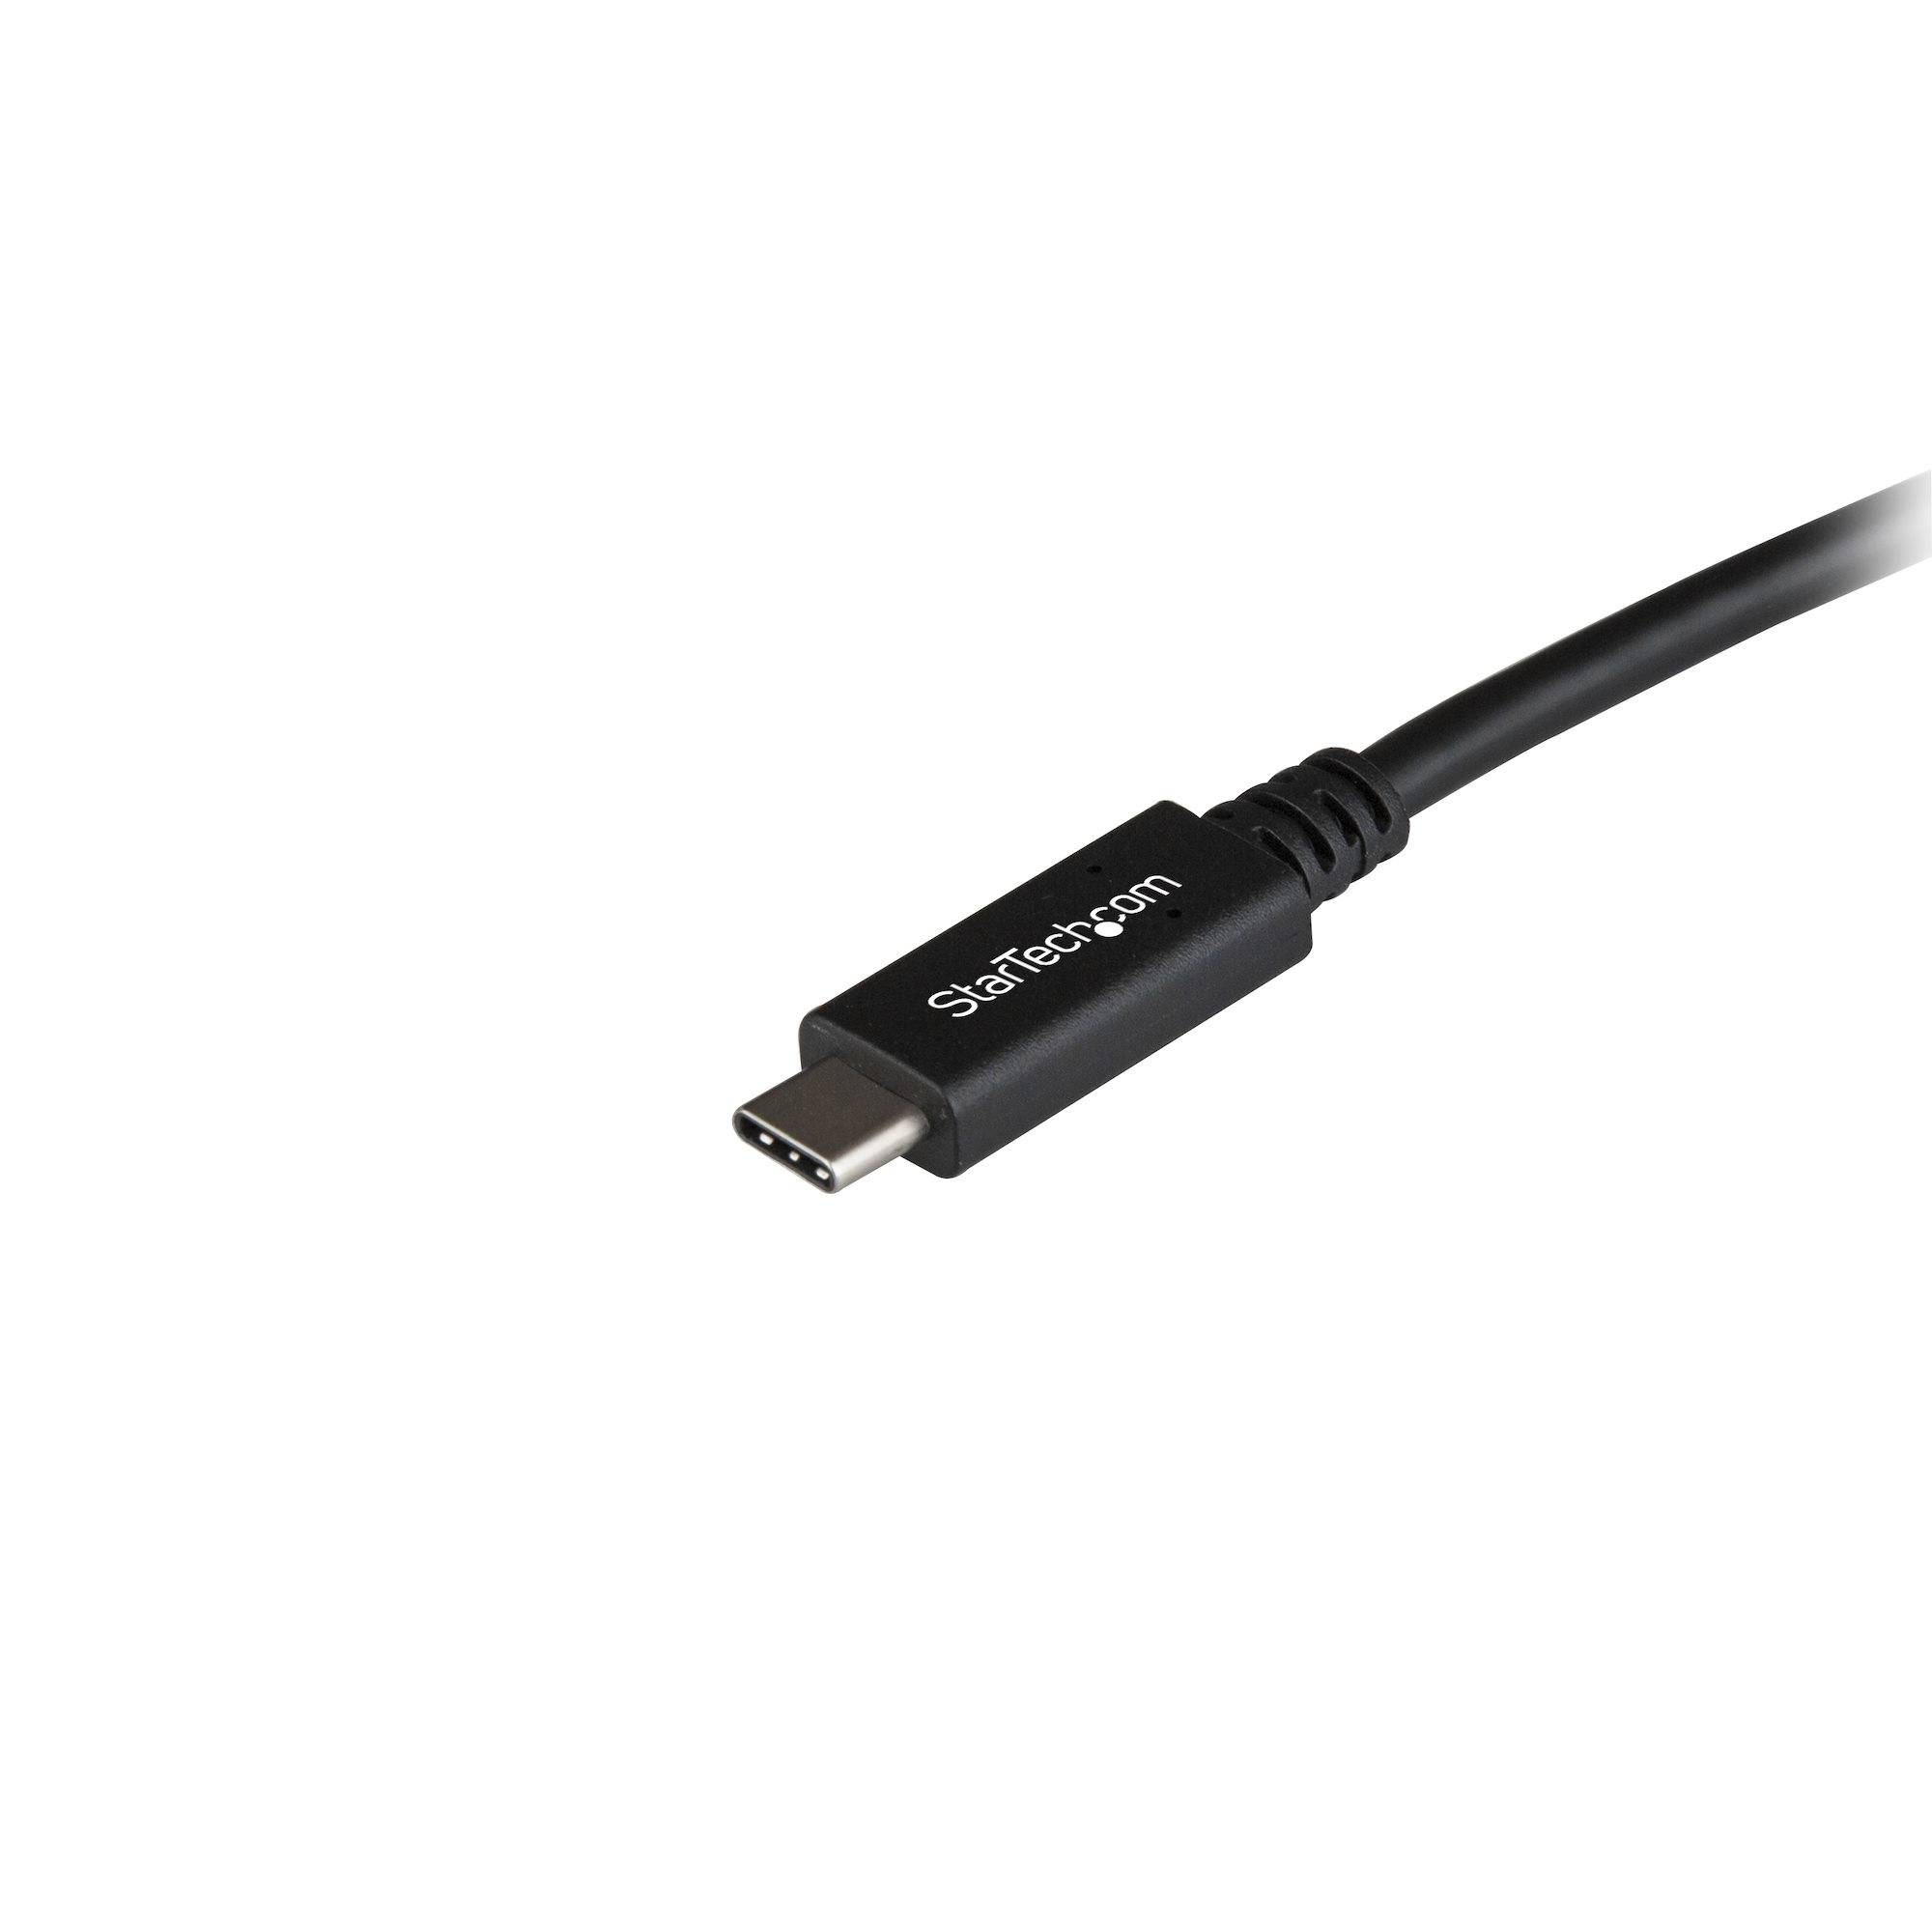 Rca Informatique - image du produit : 3FT USB TYPE C TO USB TYPE B CABLE USB 3.1 GEN 2 10GBPS